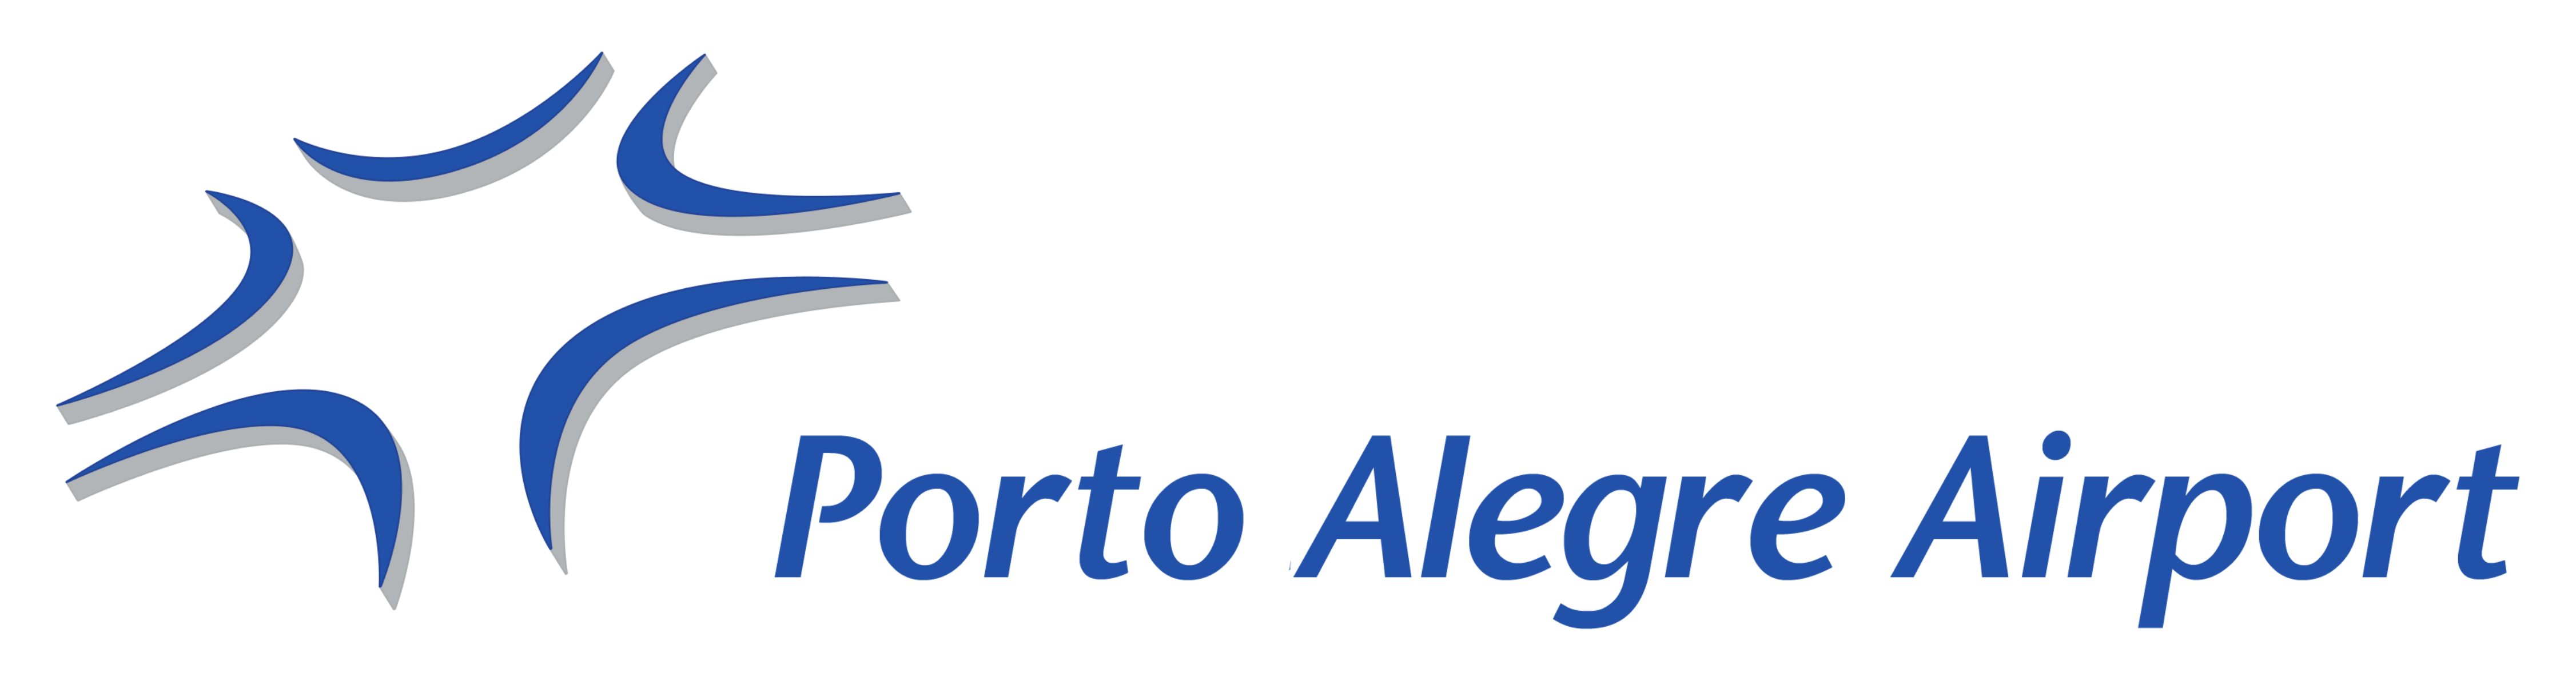 Fraport - Porto Alegre